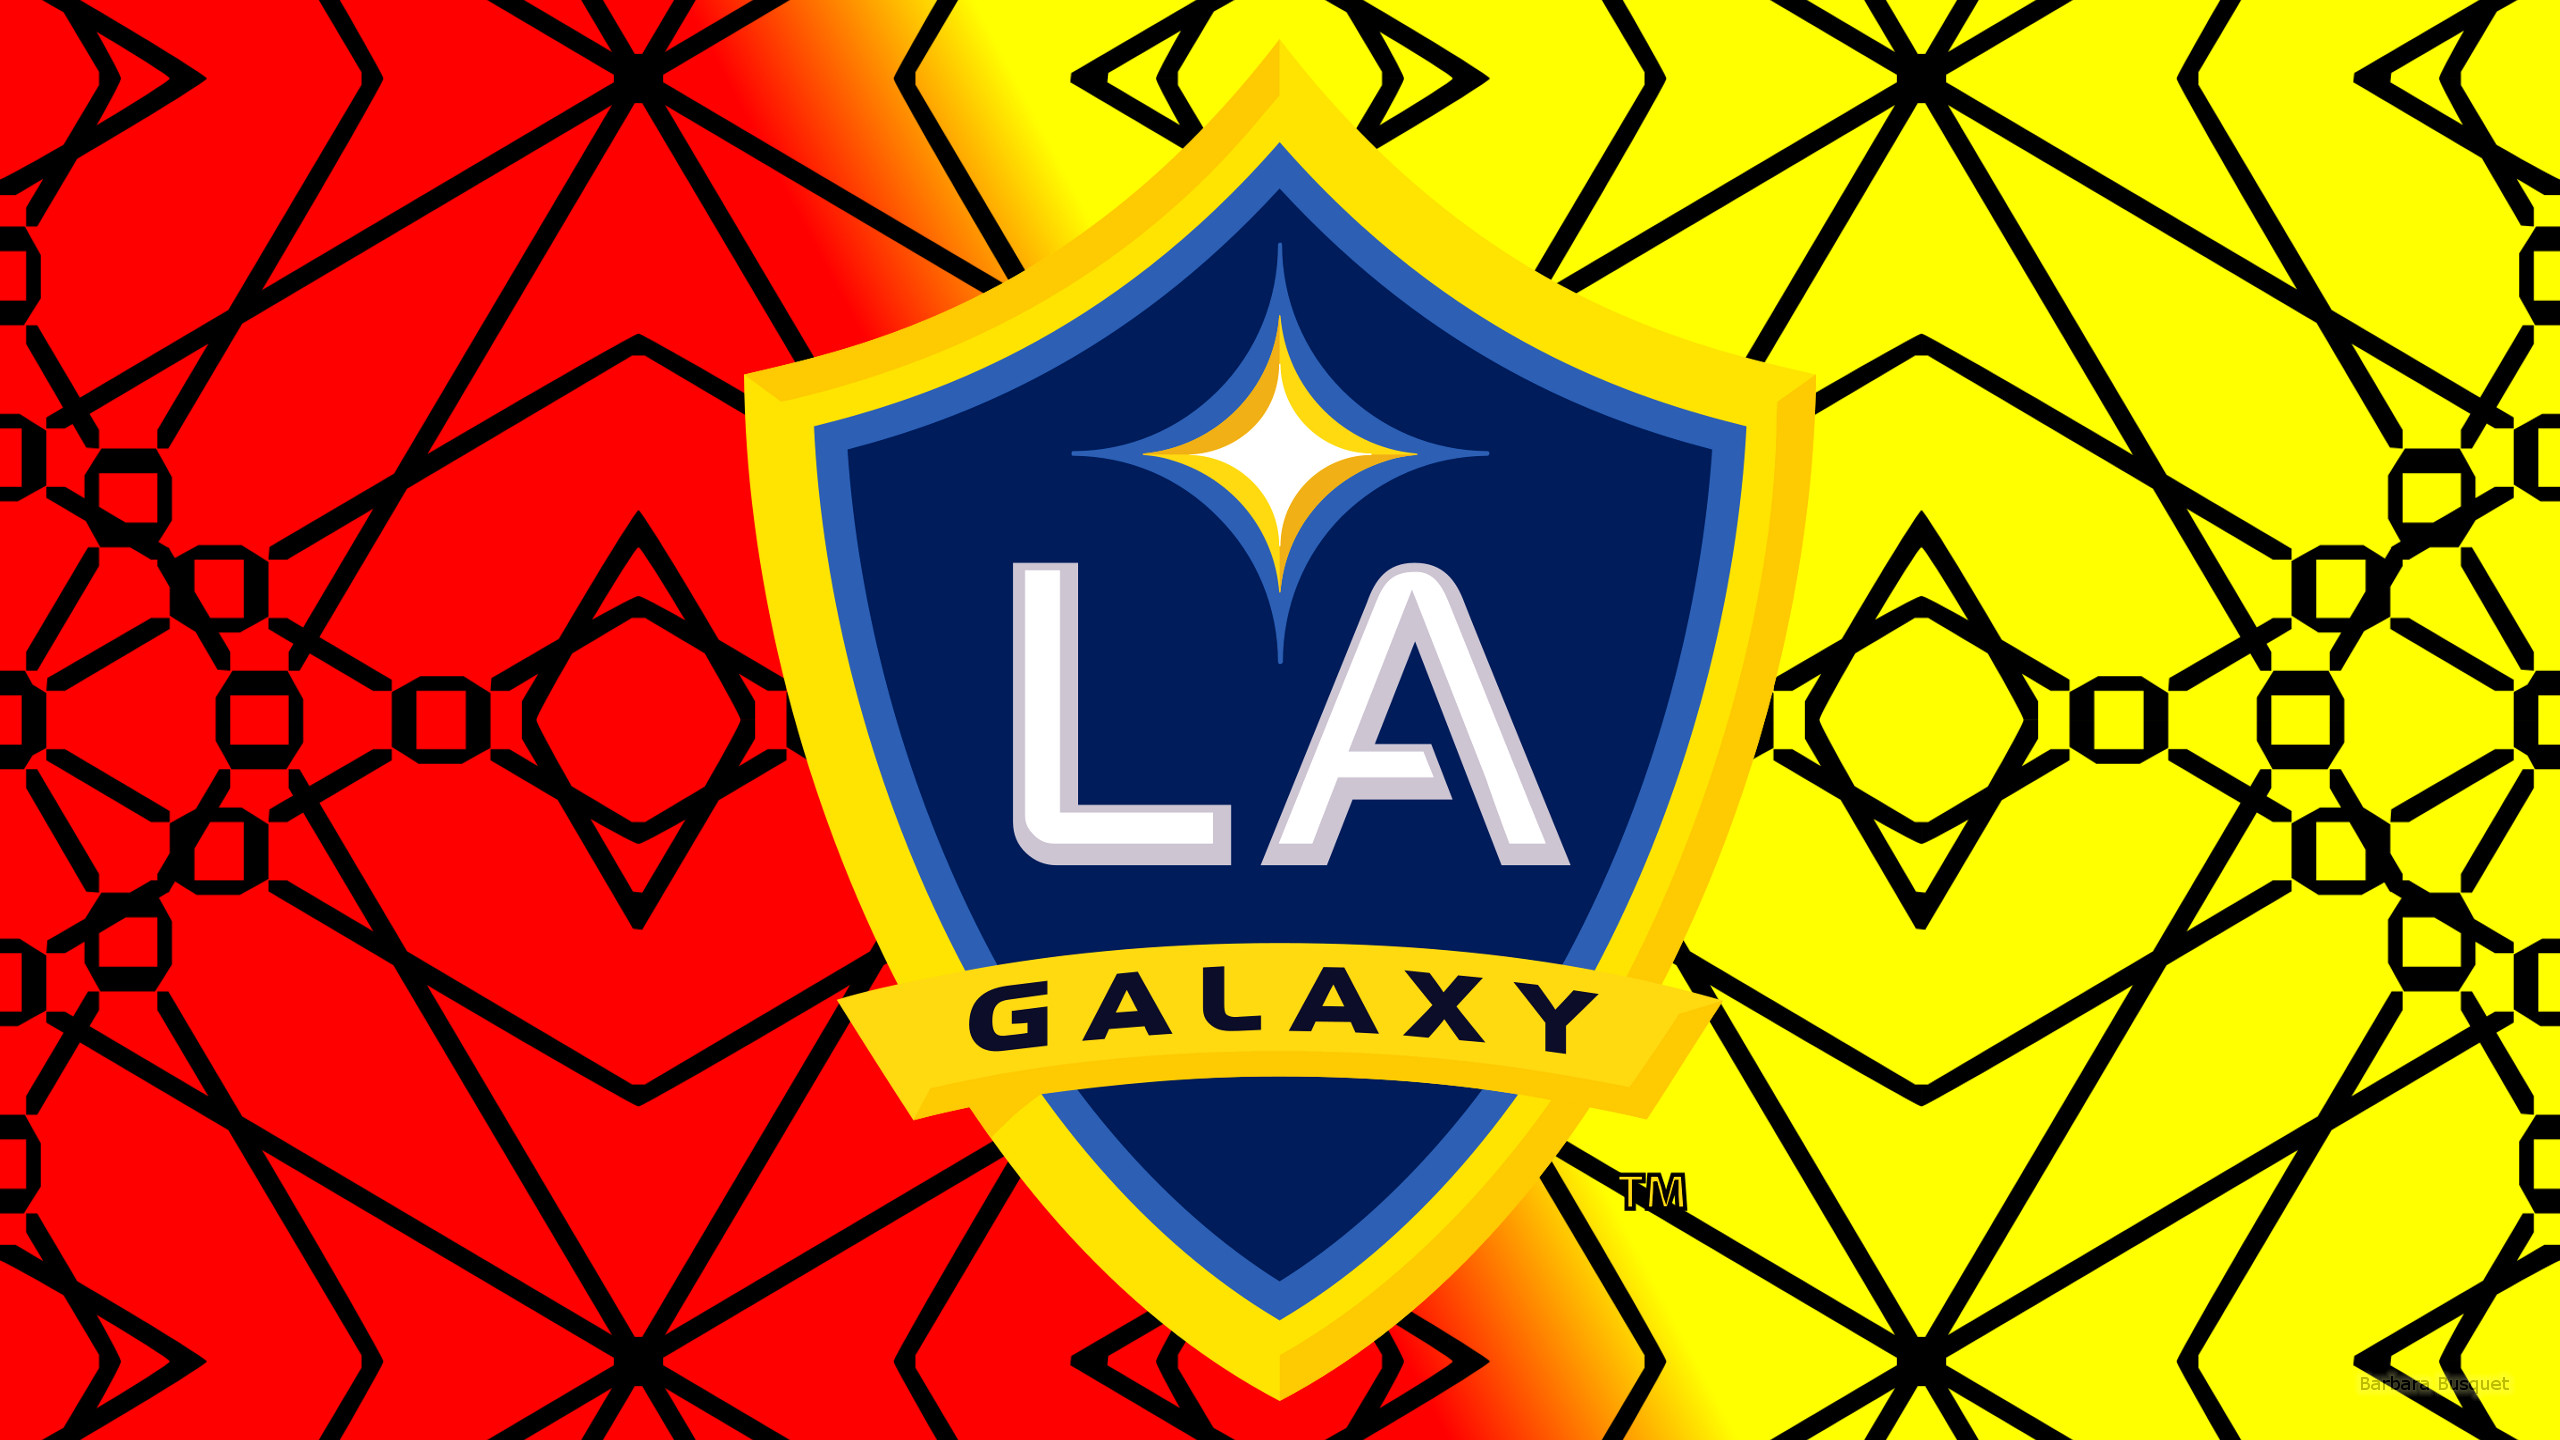 Emblem La Galaxy Logo Mls Soccer 2560x1440